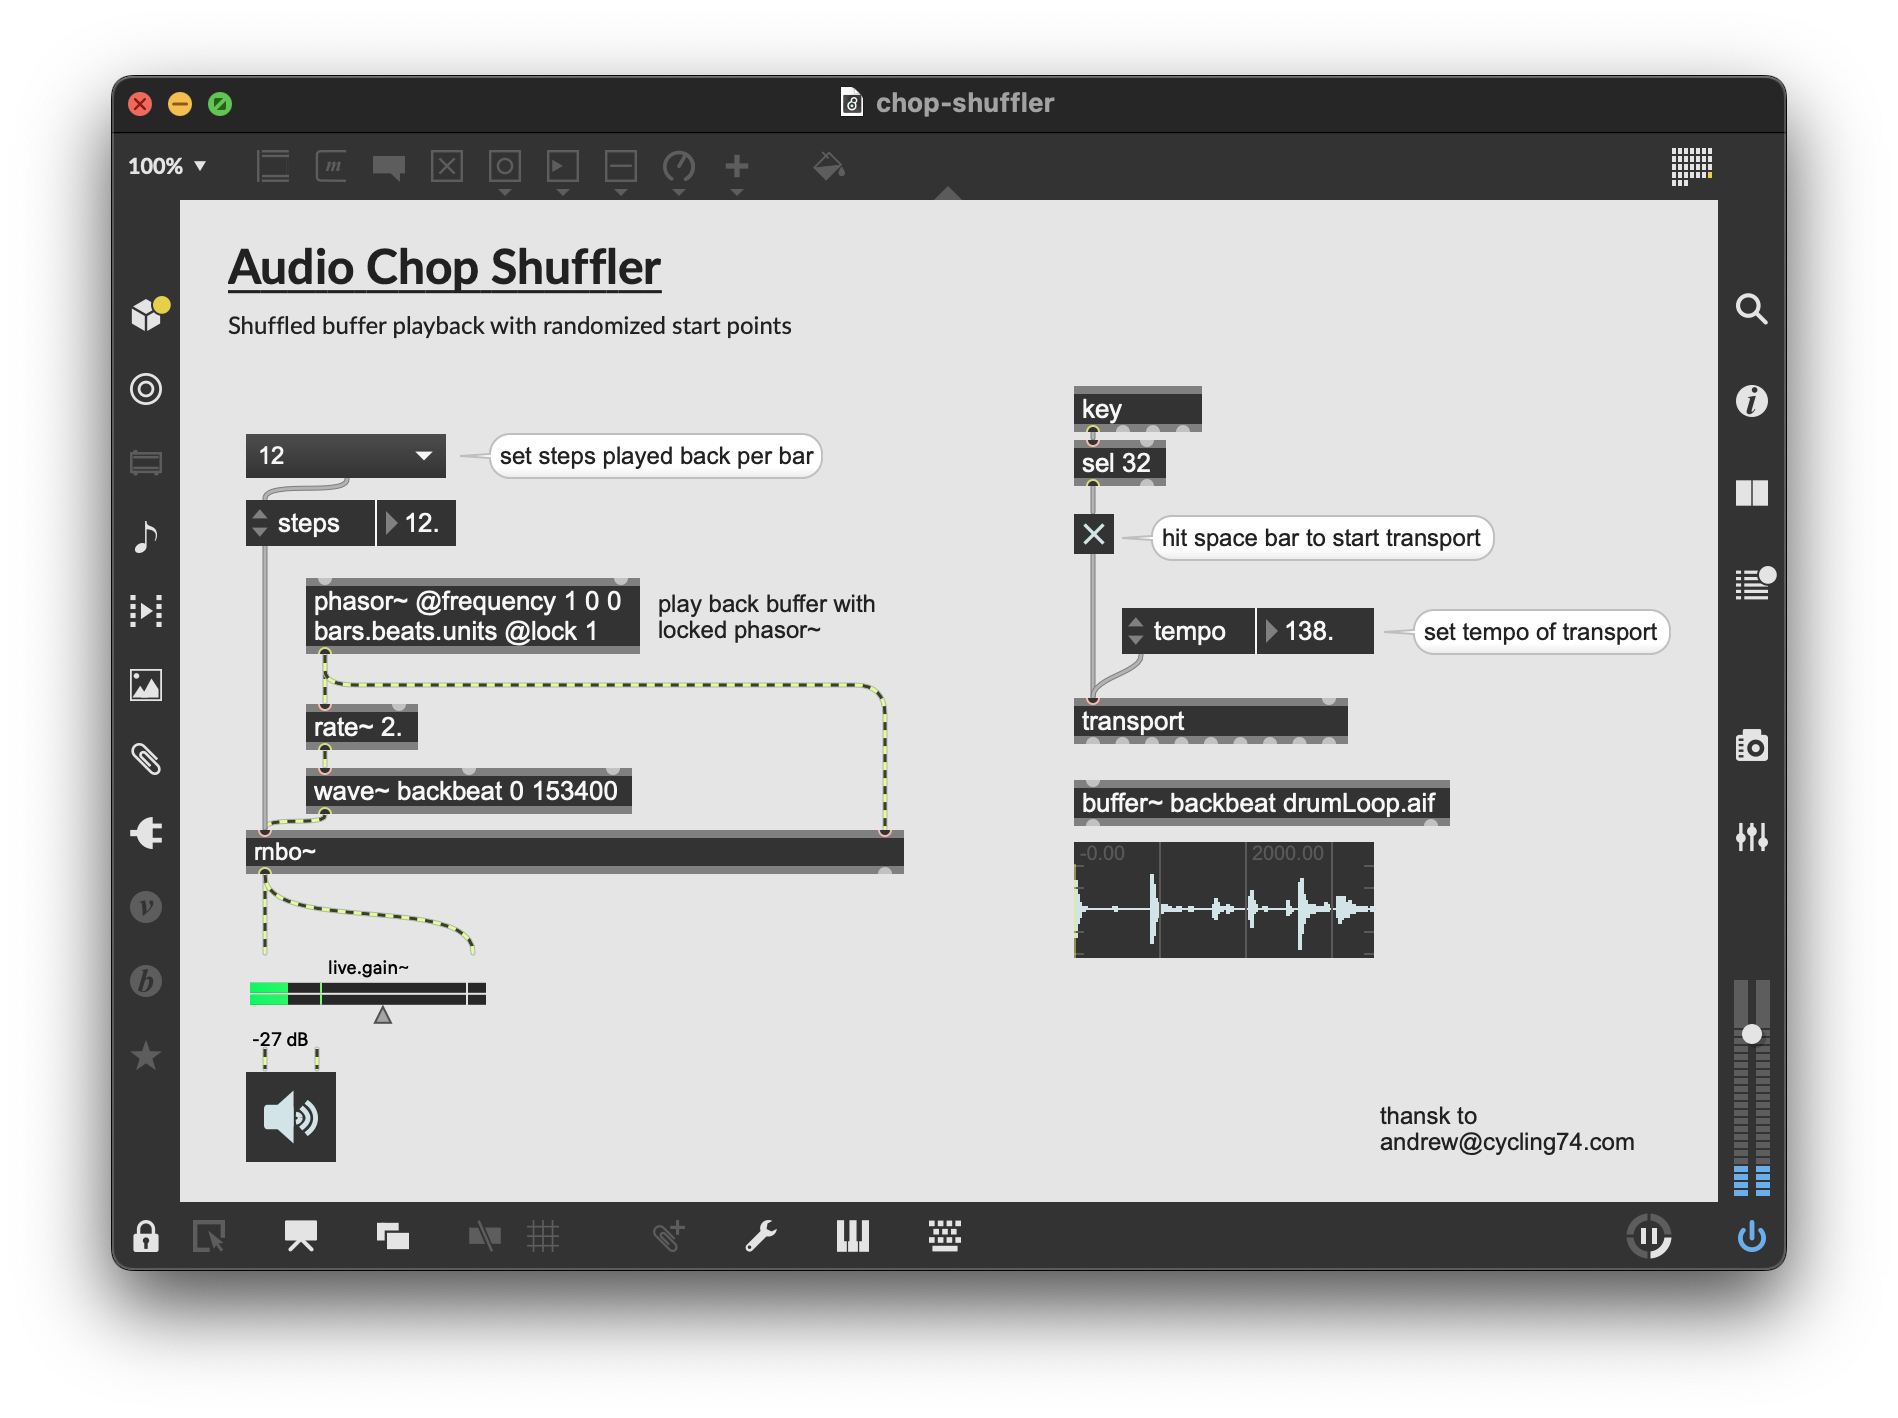 audiochop-shuffler.png